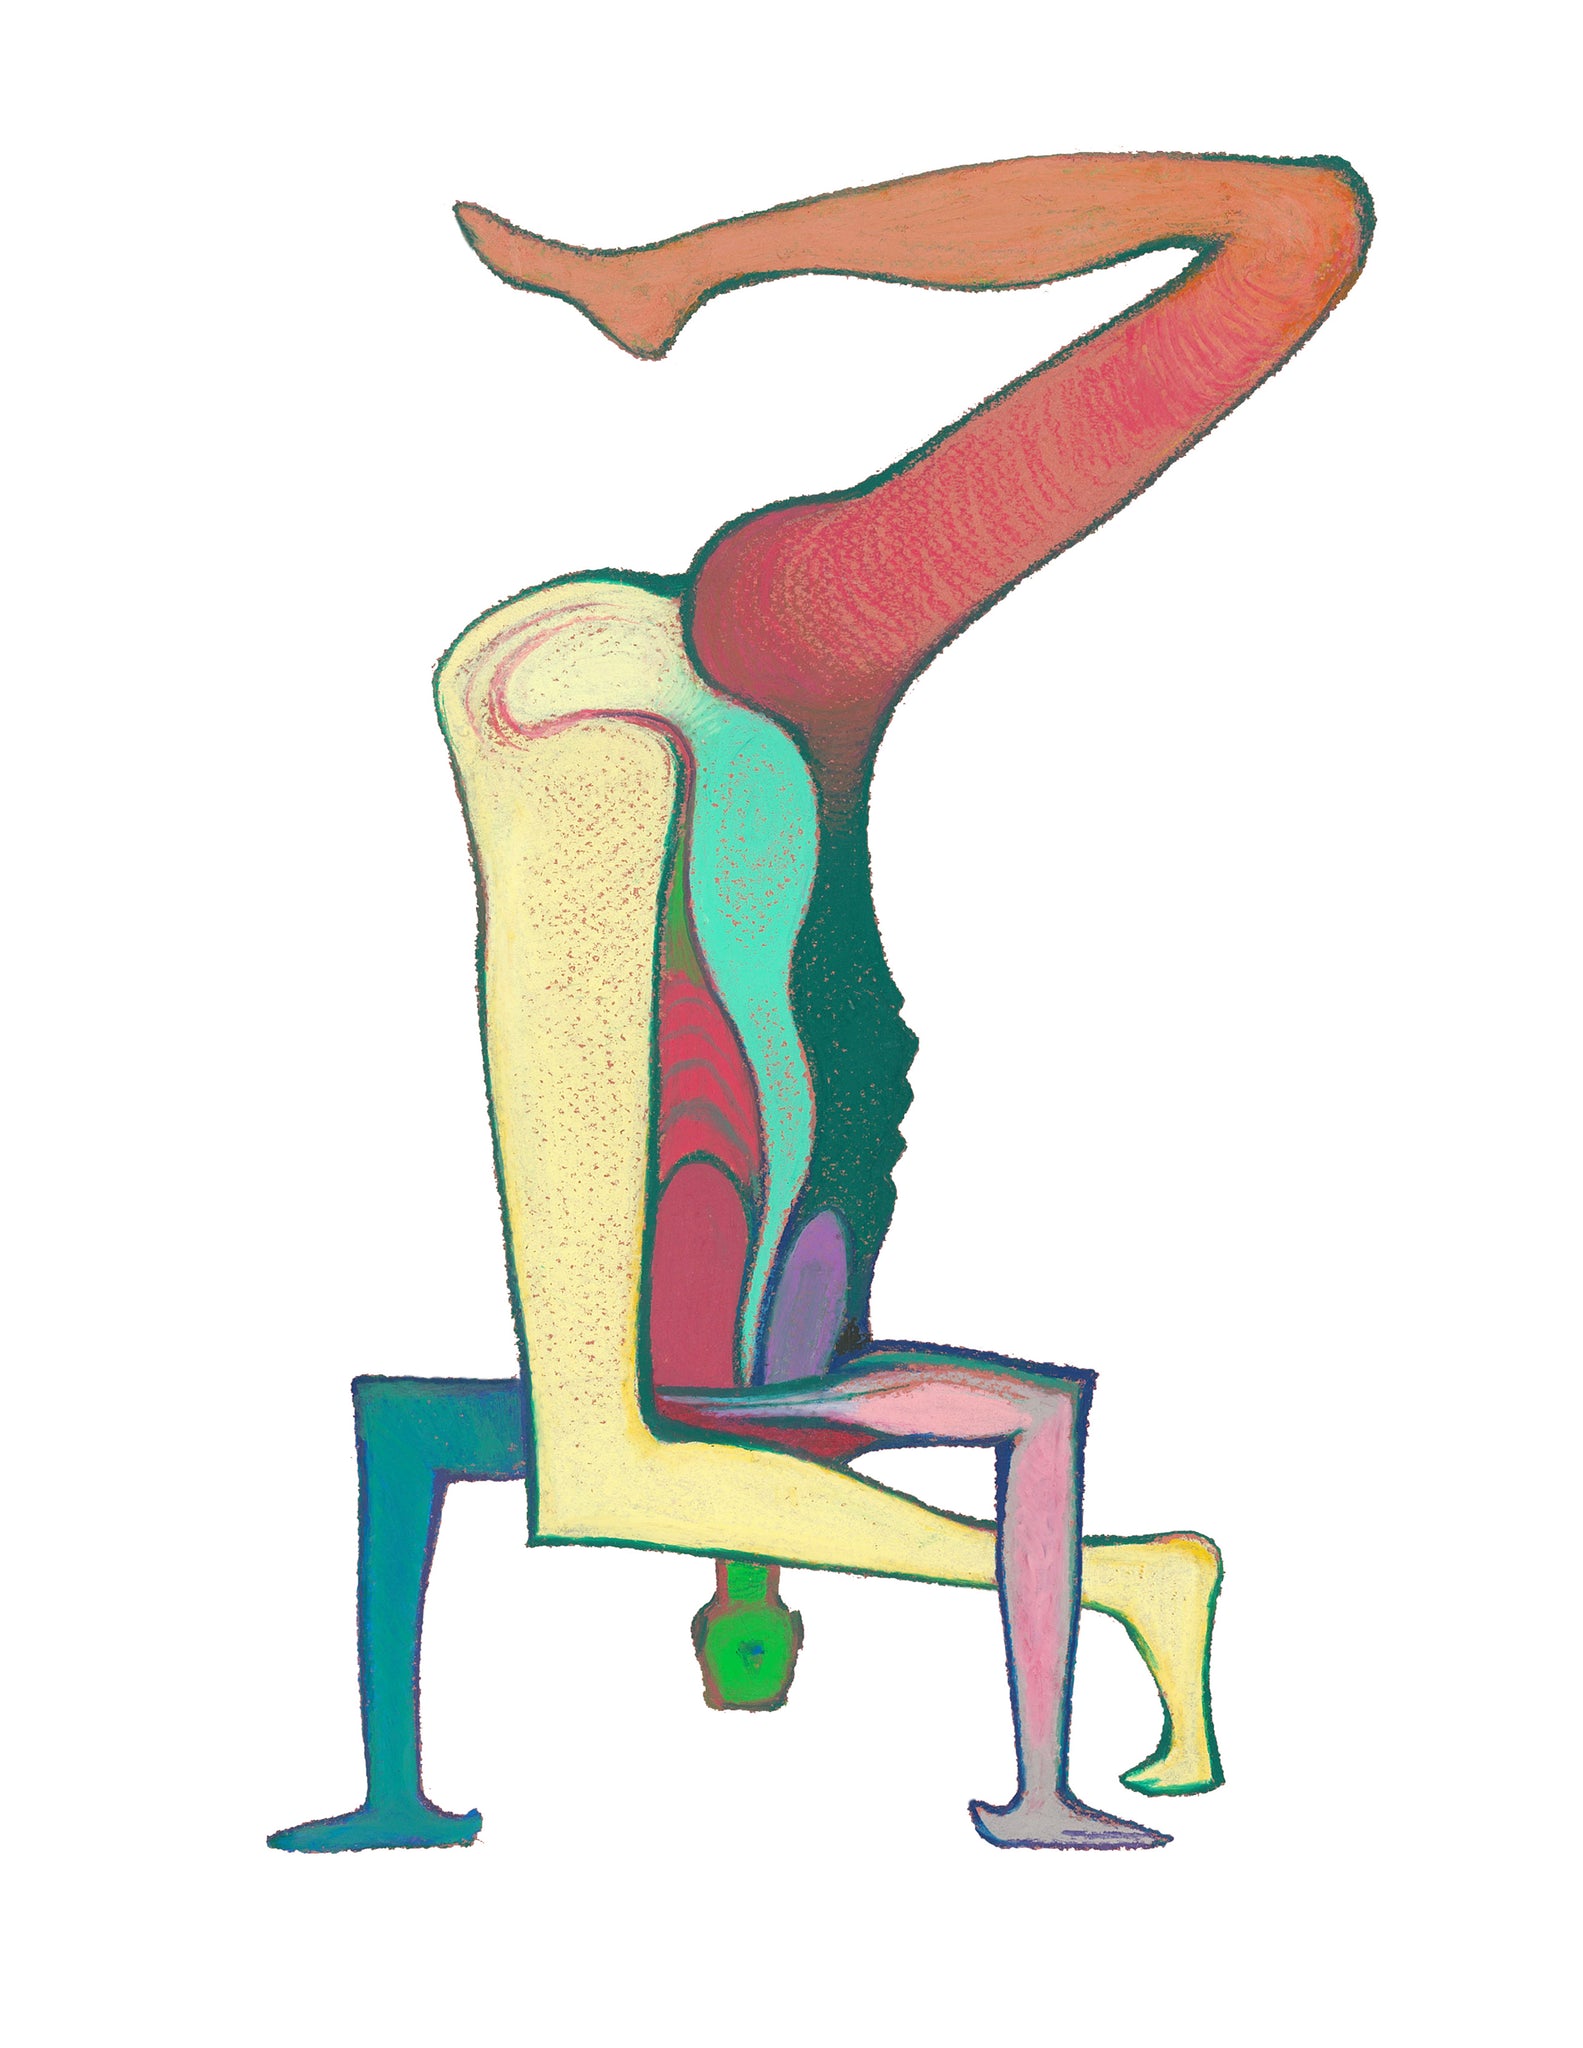 Art Print. Graphikasana, Inversions, Baby cradle pose in headstand (Hindolasana in Shirshasana) Art by Yolyanko william